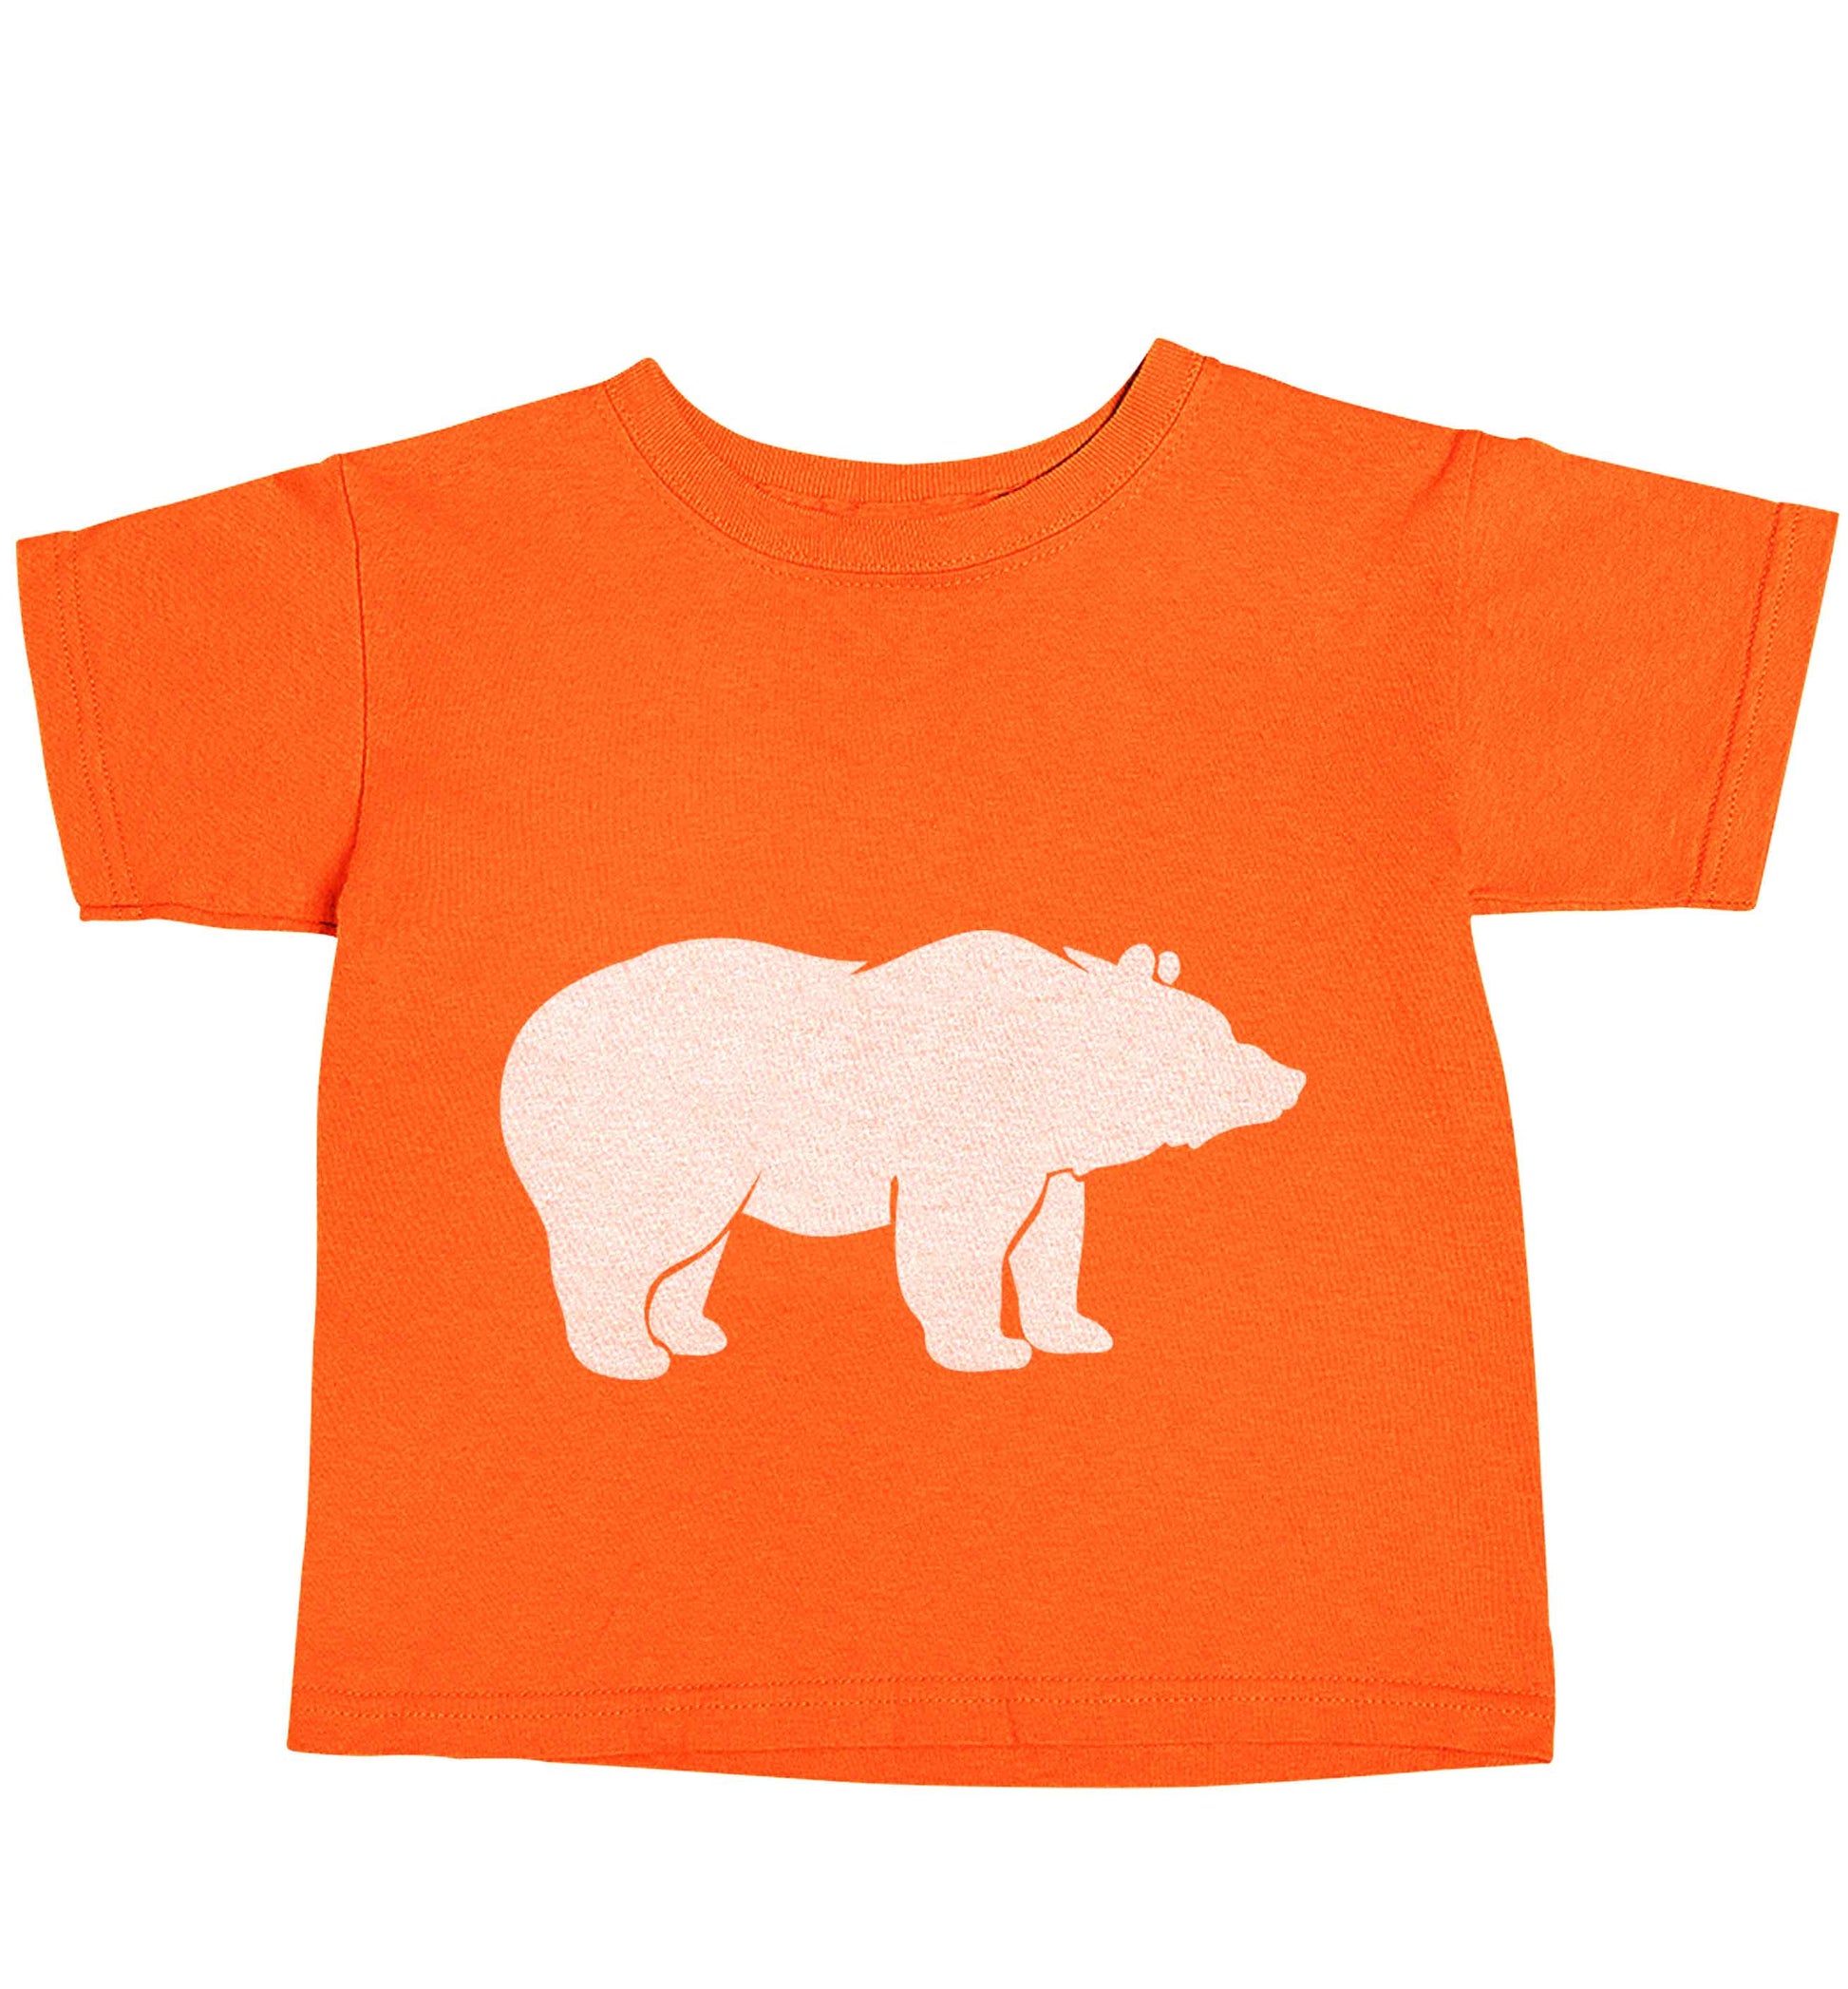 Blue bear orange baby toddler Tshirt 2 Years